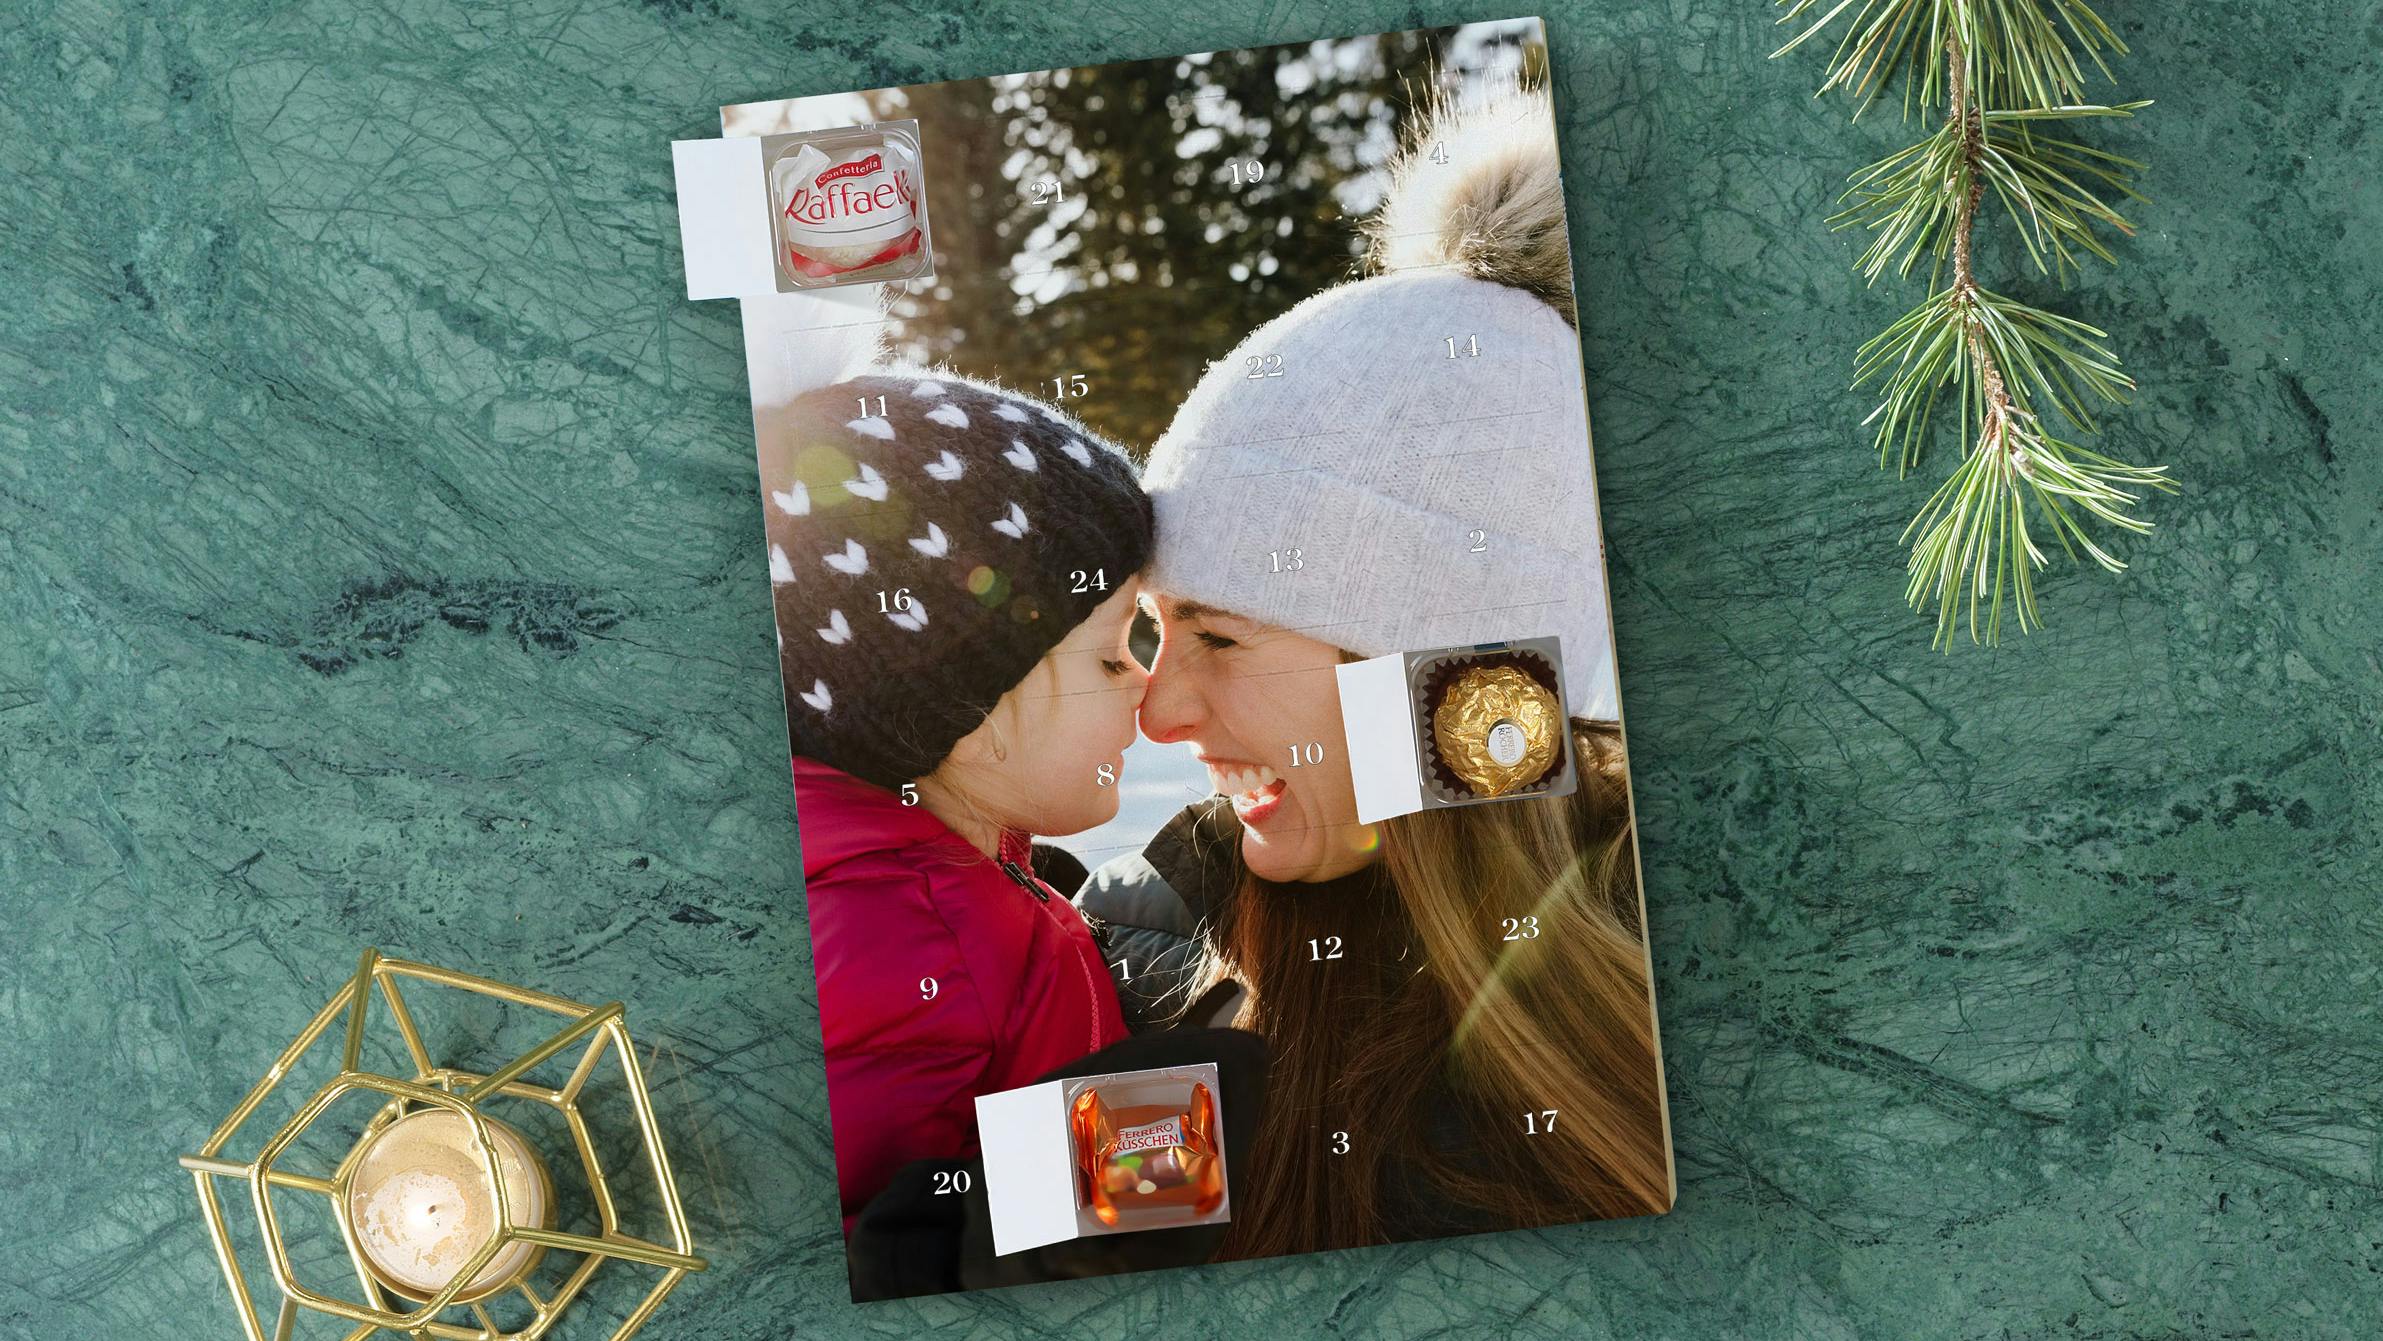 Gepersonaliseerde adventskalender met chocolade van Ferrero en een foto van een meisje in de sneeuw